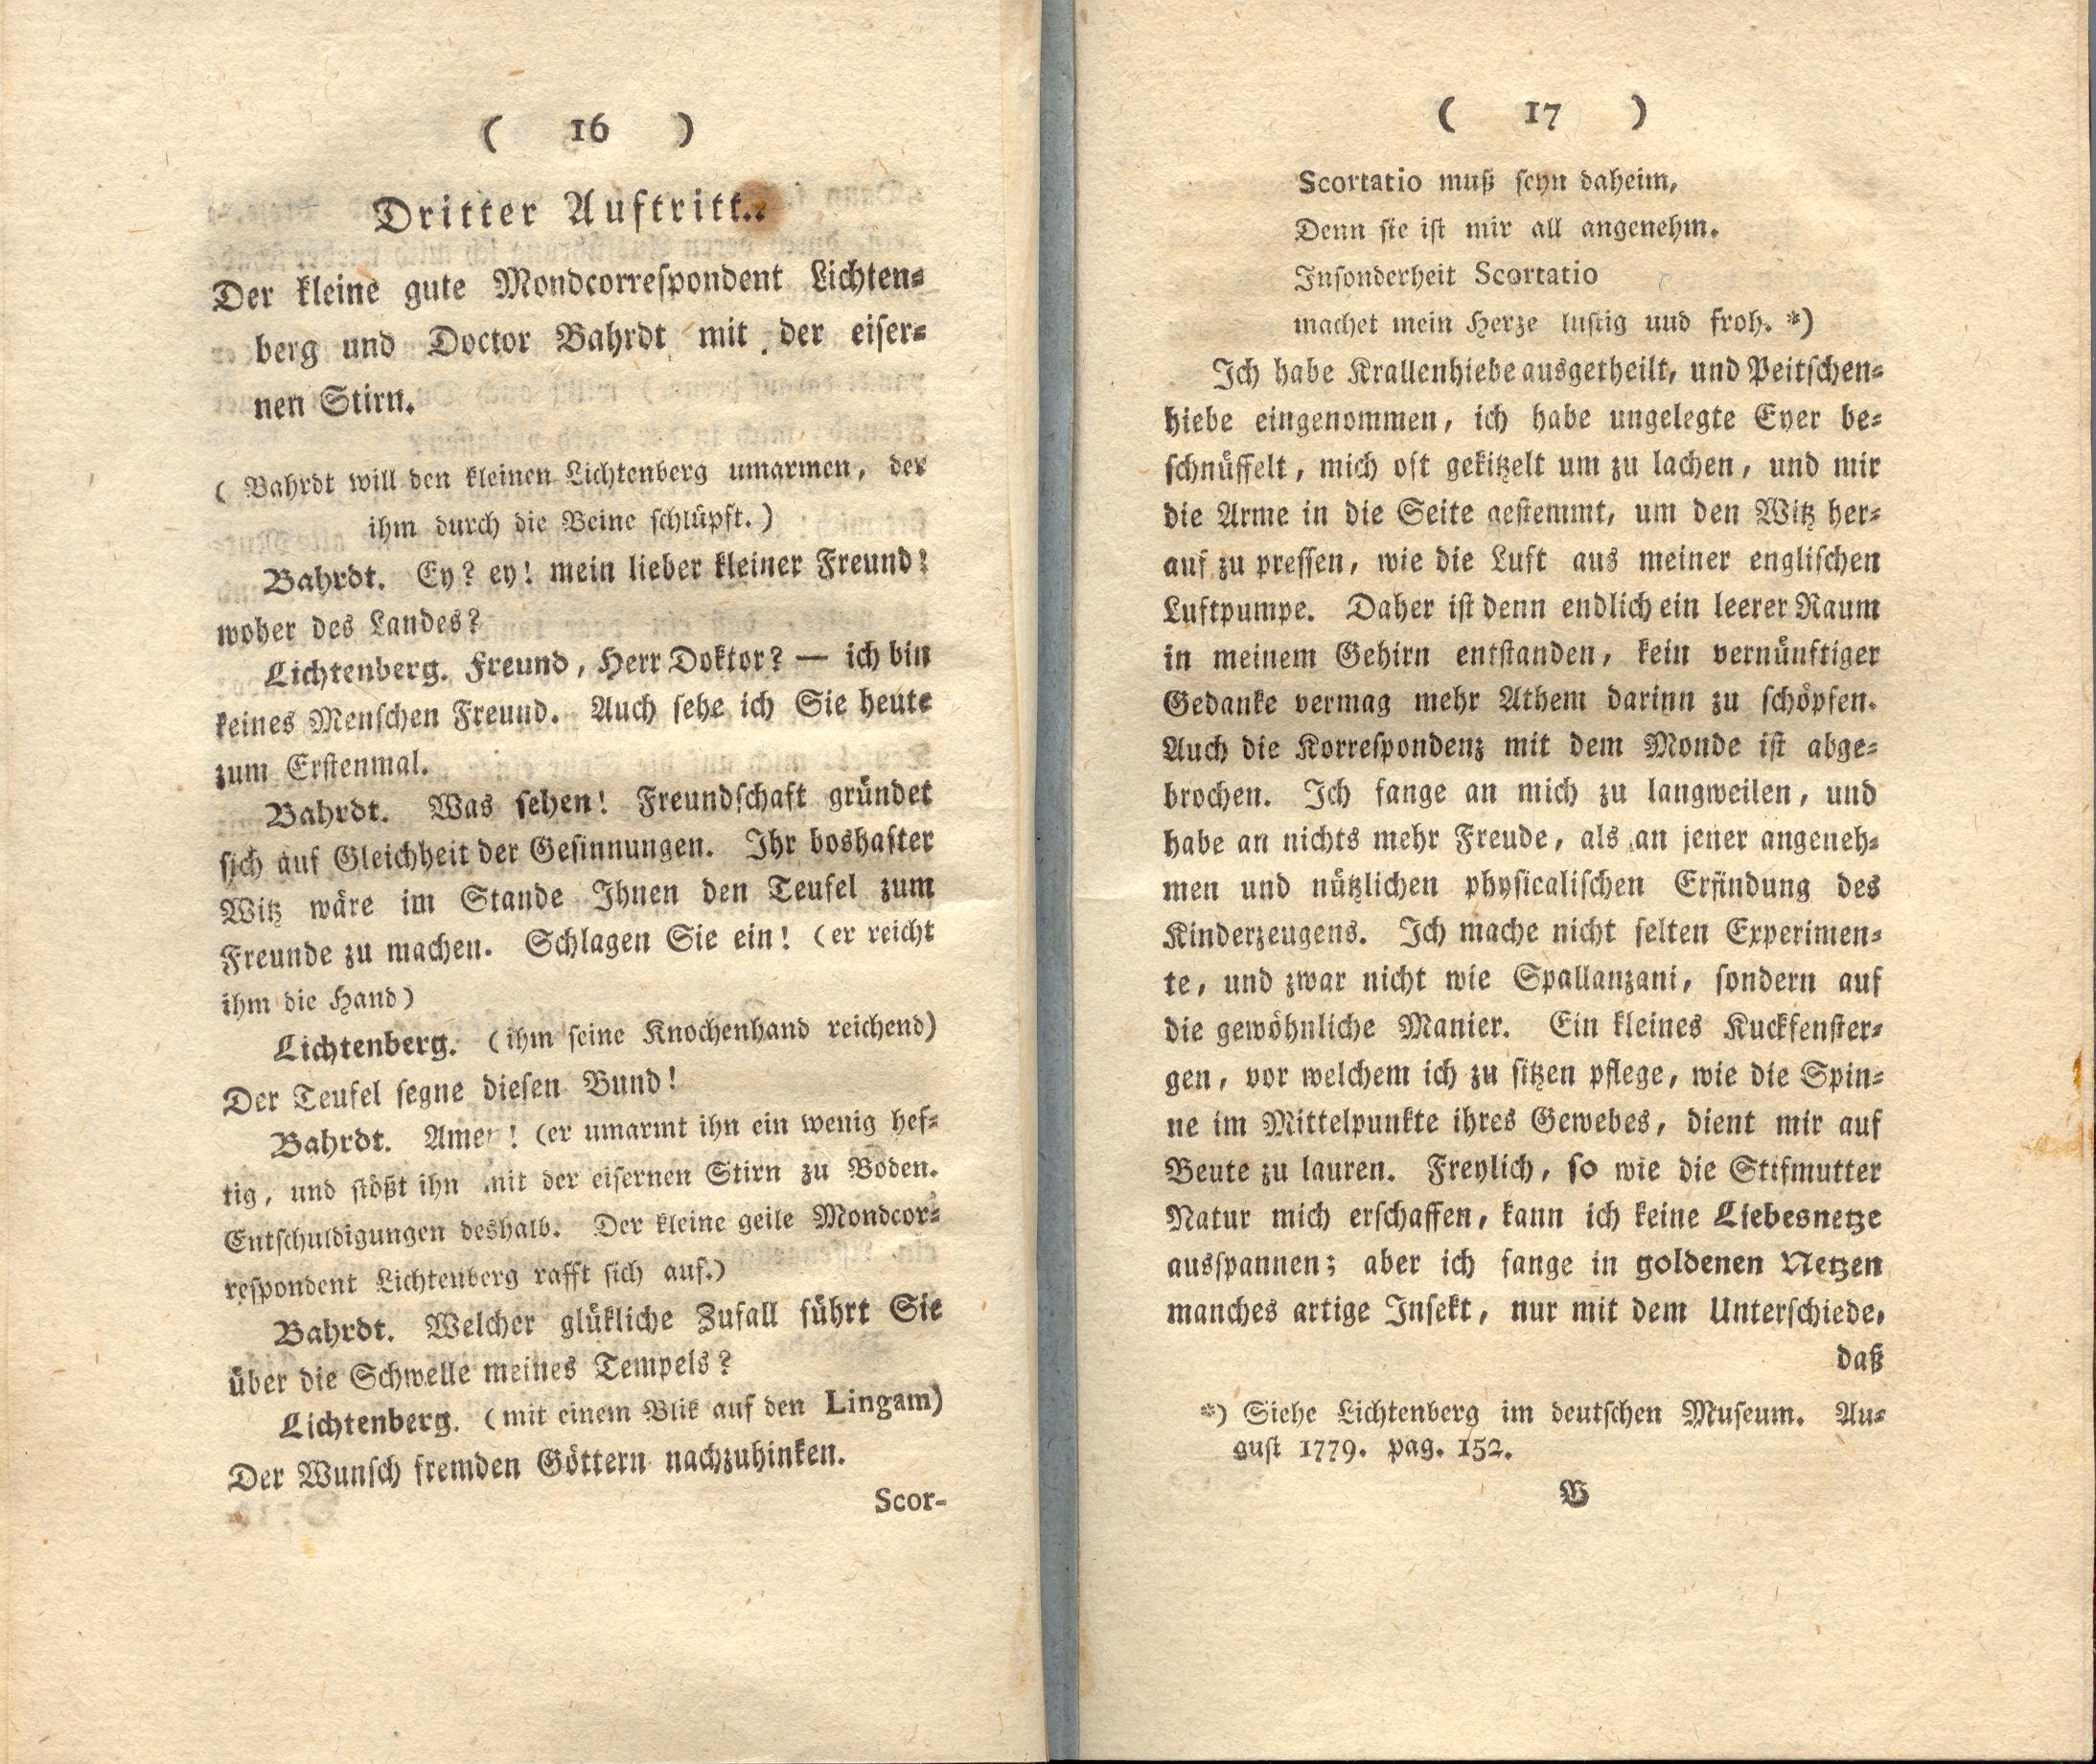 Doctor Bahrdt mit der eisernen Stirn (1790) | 10. (16-17) Põhitekst